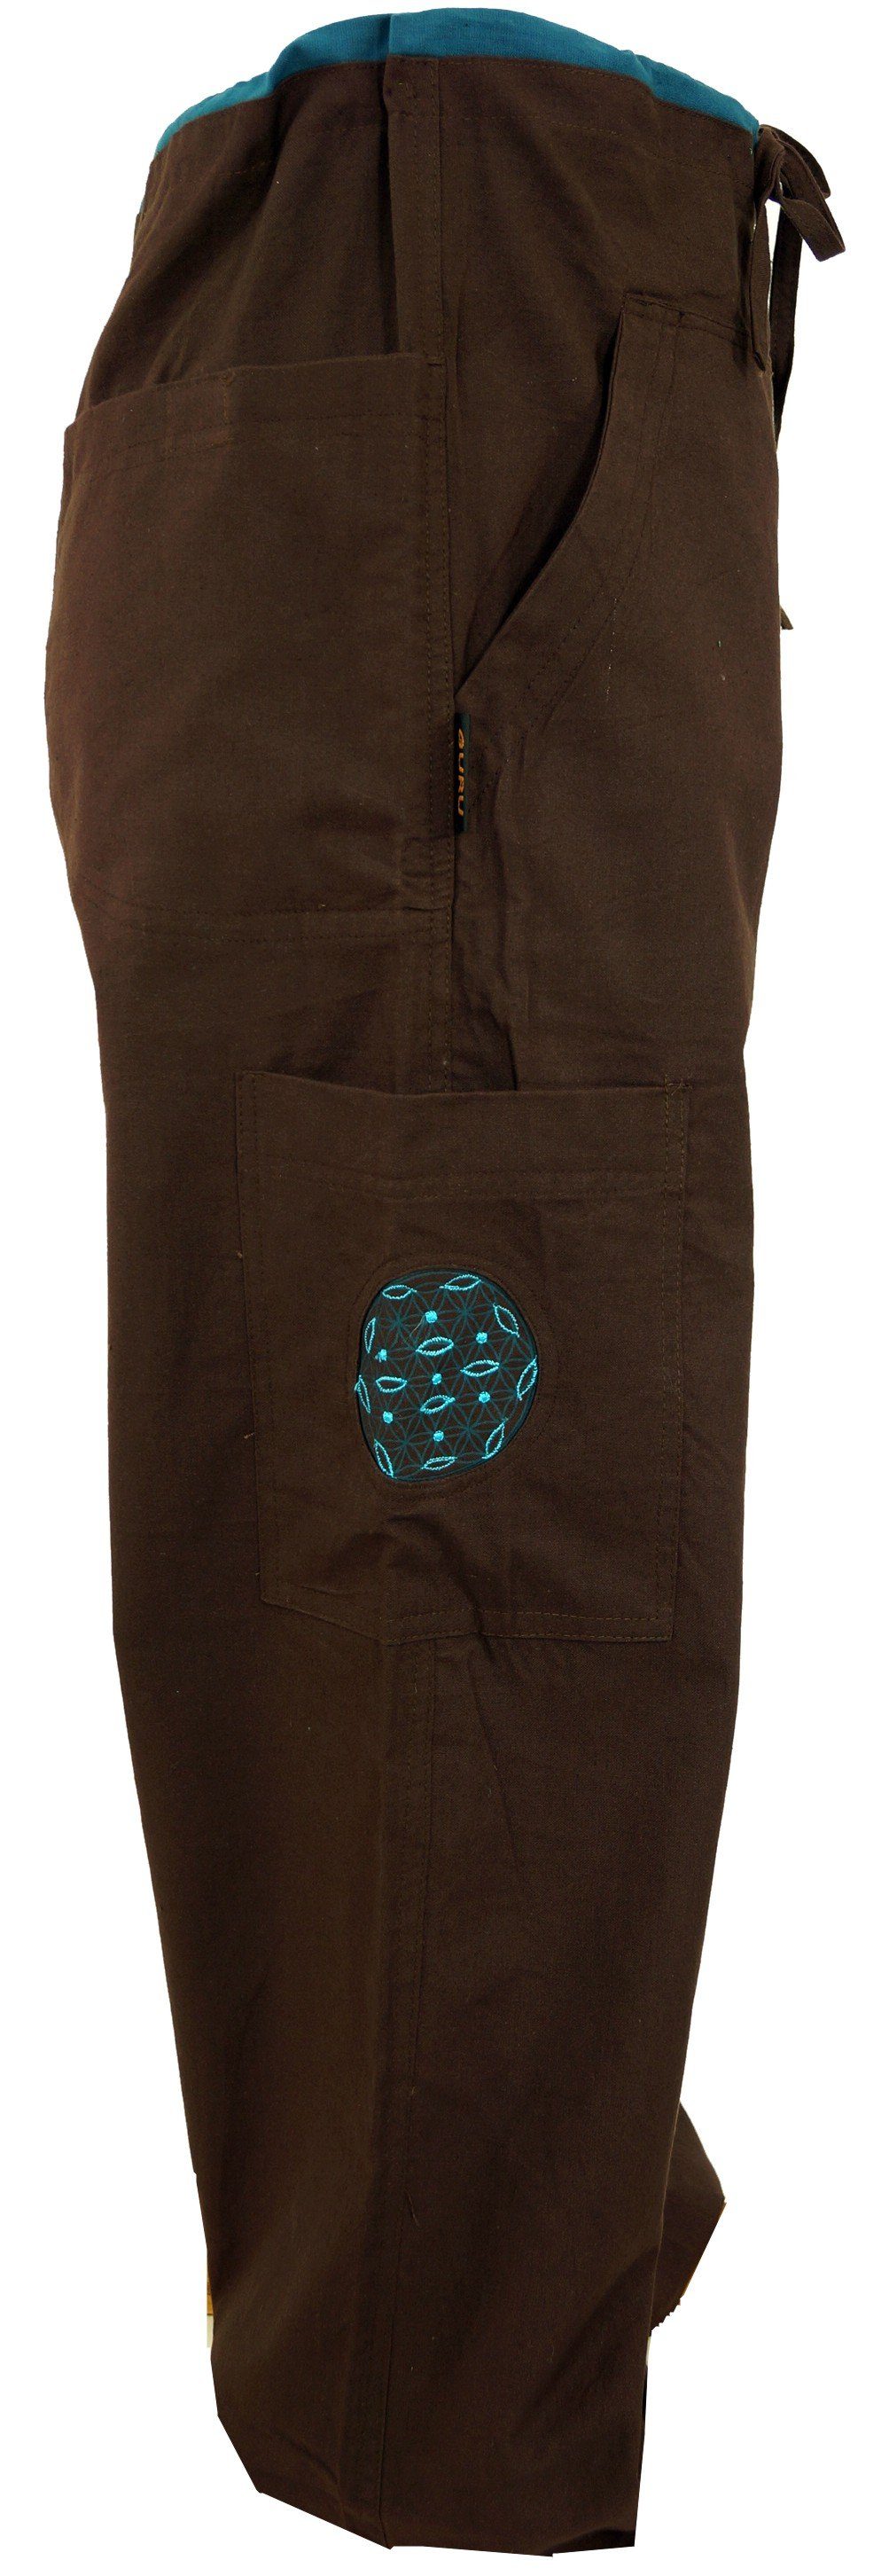 Yogahose, Relaxhose Bekleidung alternative Style, mit Stickerei Goa Guru-Shop Hose - coffee Ethno